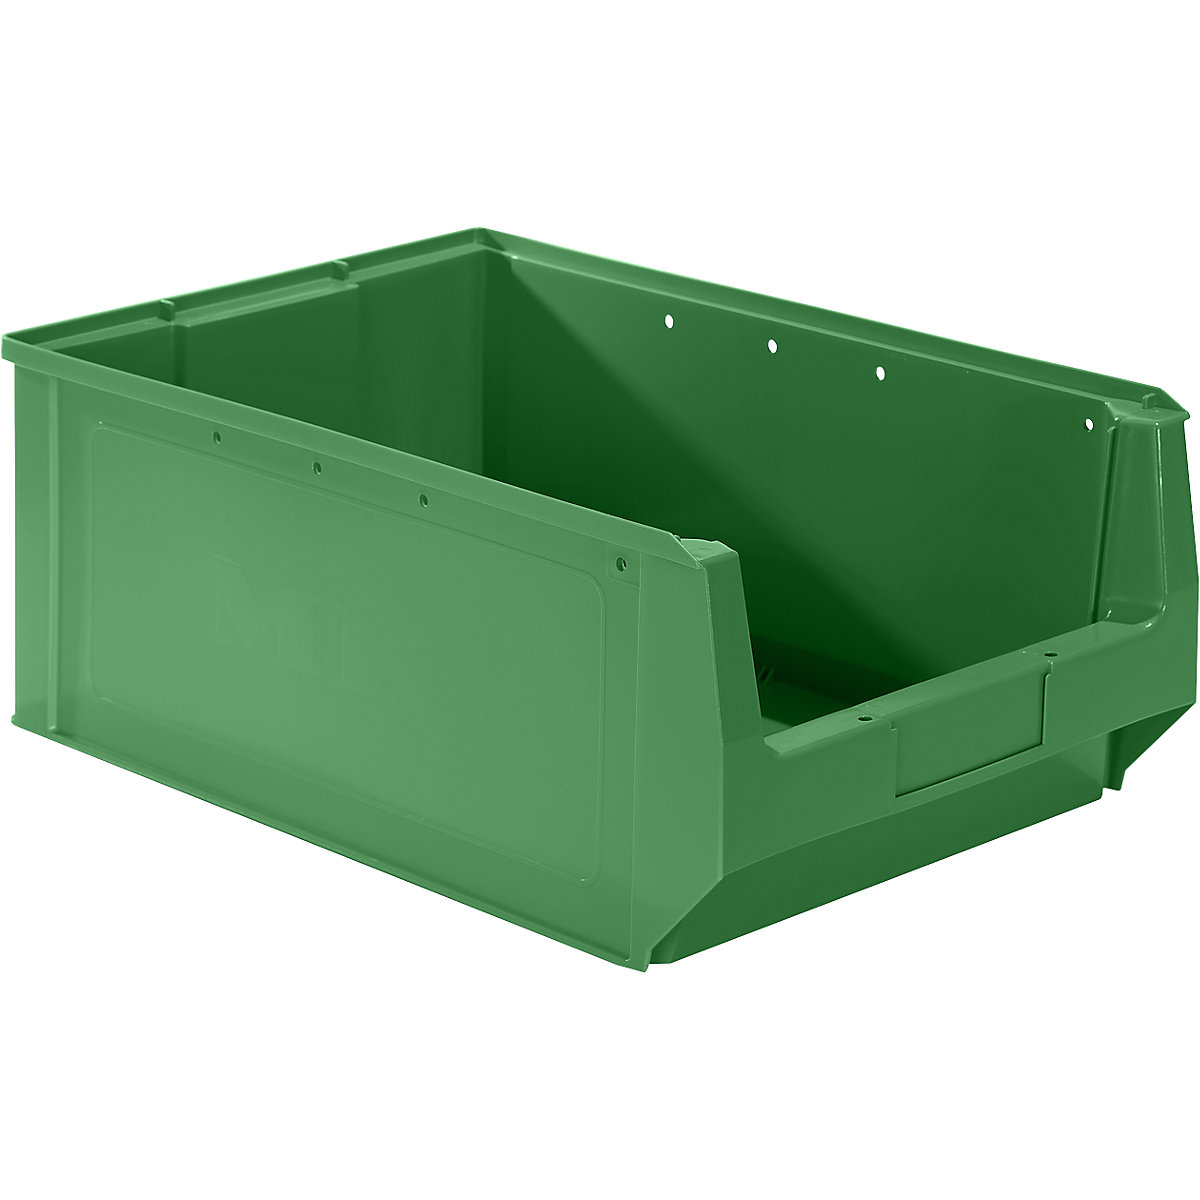 Odprta skladiščna posoda iz polietilena – mauser, DxŠxV 500 x 310 x 200 mm, zelena, DE 10 kosov-8